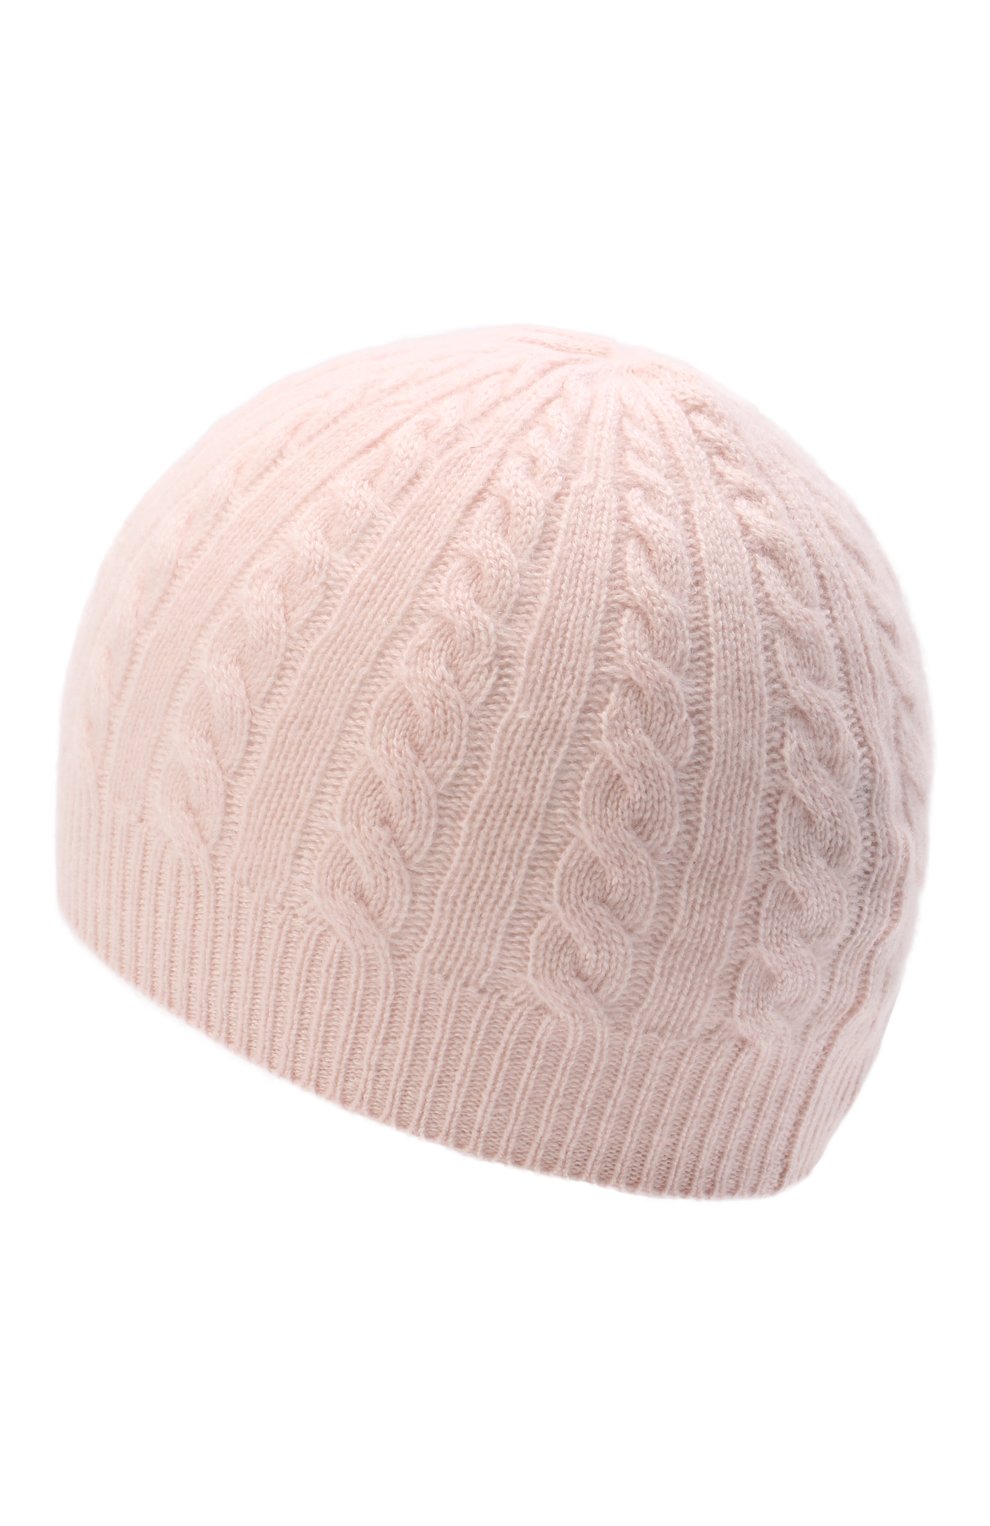 Детского кашемировая шапка OSCAR ET VALENTINE розового цвета, арт. BON05S | Фото 2 (Материал: Текстиль, Кашемир, Шерсть)